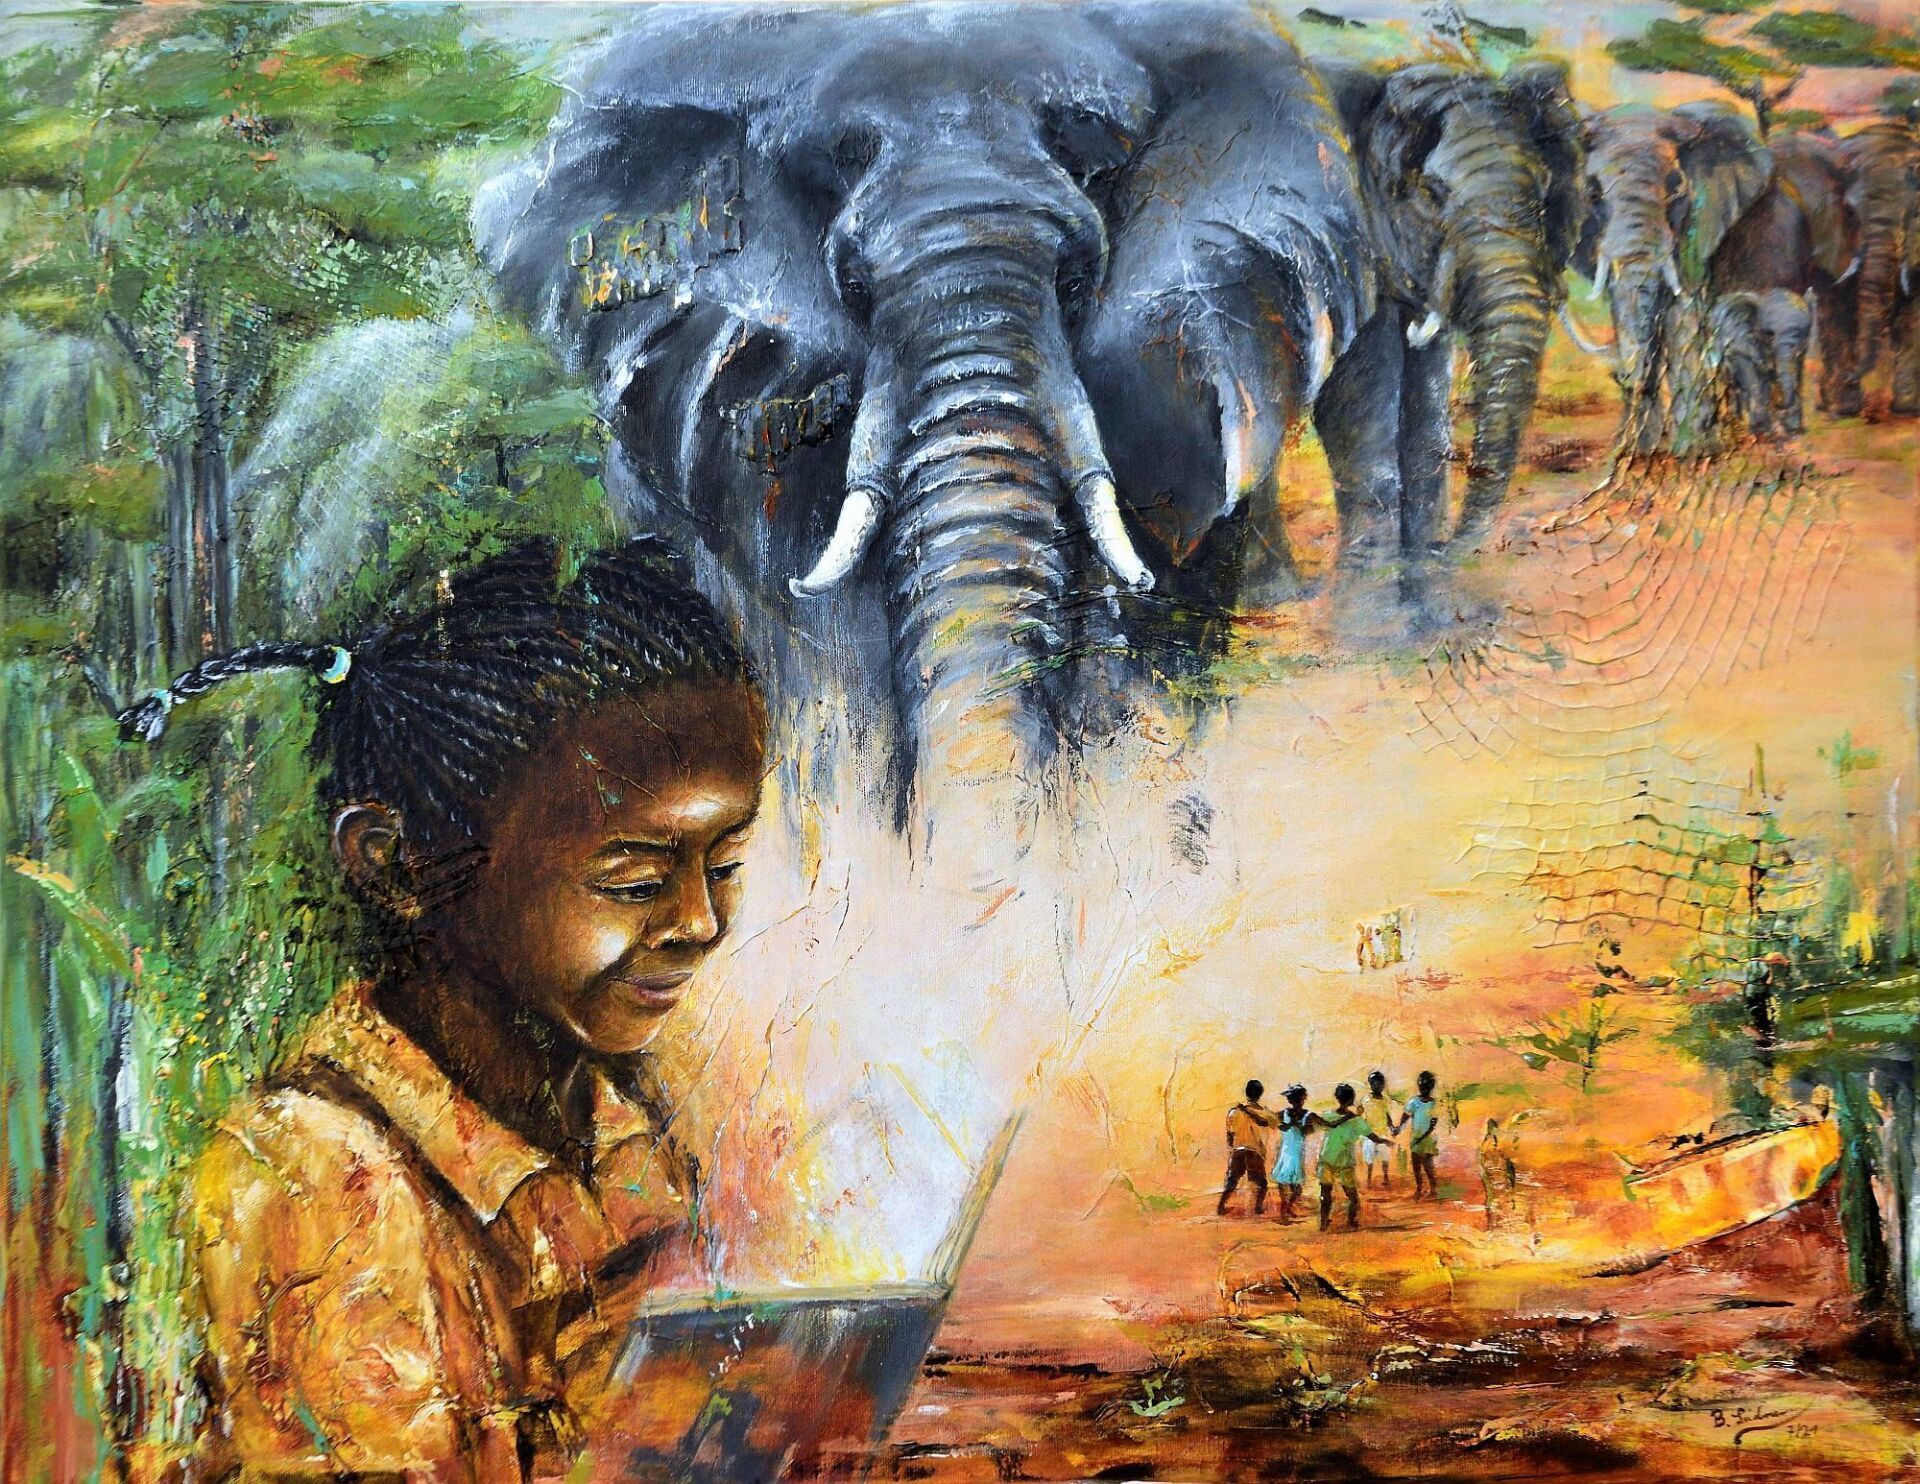 Gemälde von Bianca Leidner mit afrikanischem Mädchen und sich an den Händen haltenden Kindern, außerdem Elefanten und Urwald. Vorherschende Farben sind grün, grau und orange-gelb